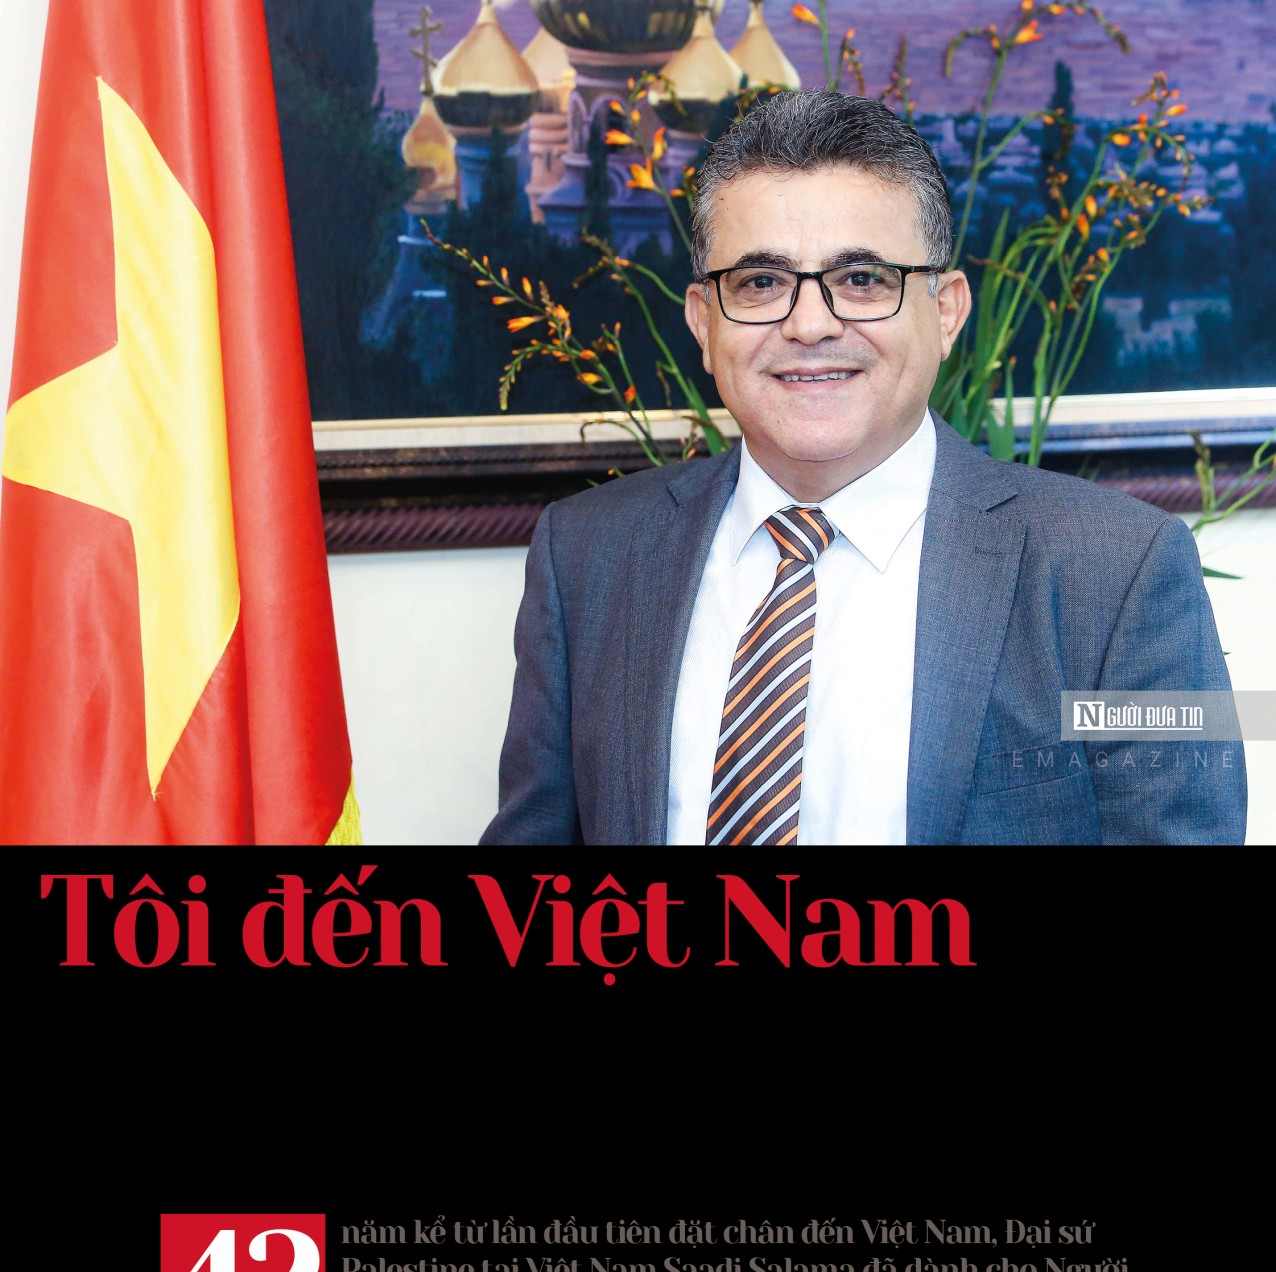 Tôi đến Việt Nam như đến với con đường giải phóng dân tộc, đất nước